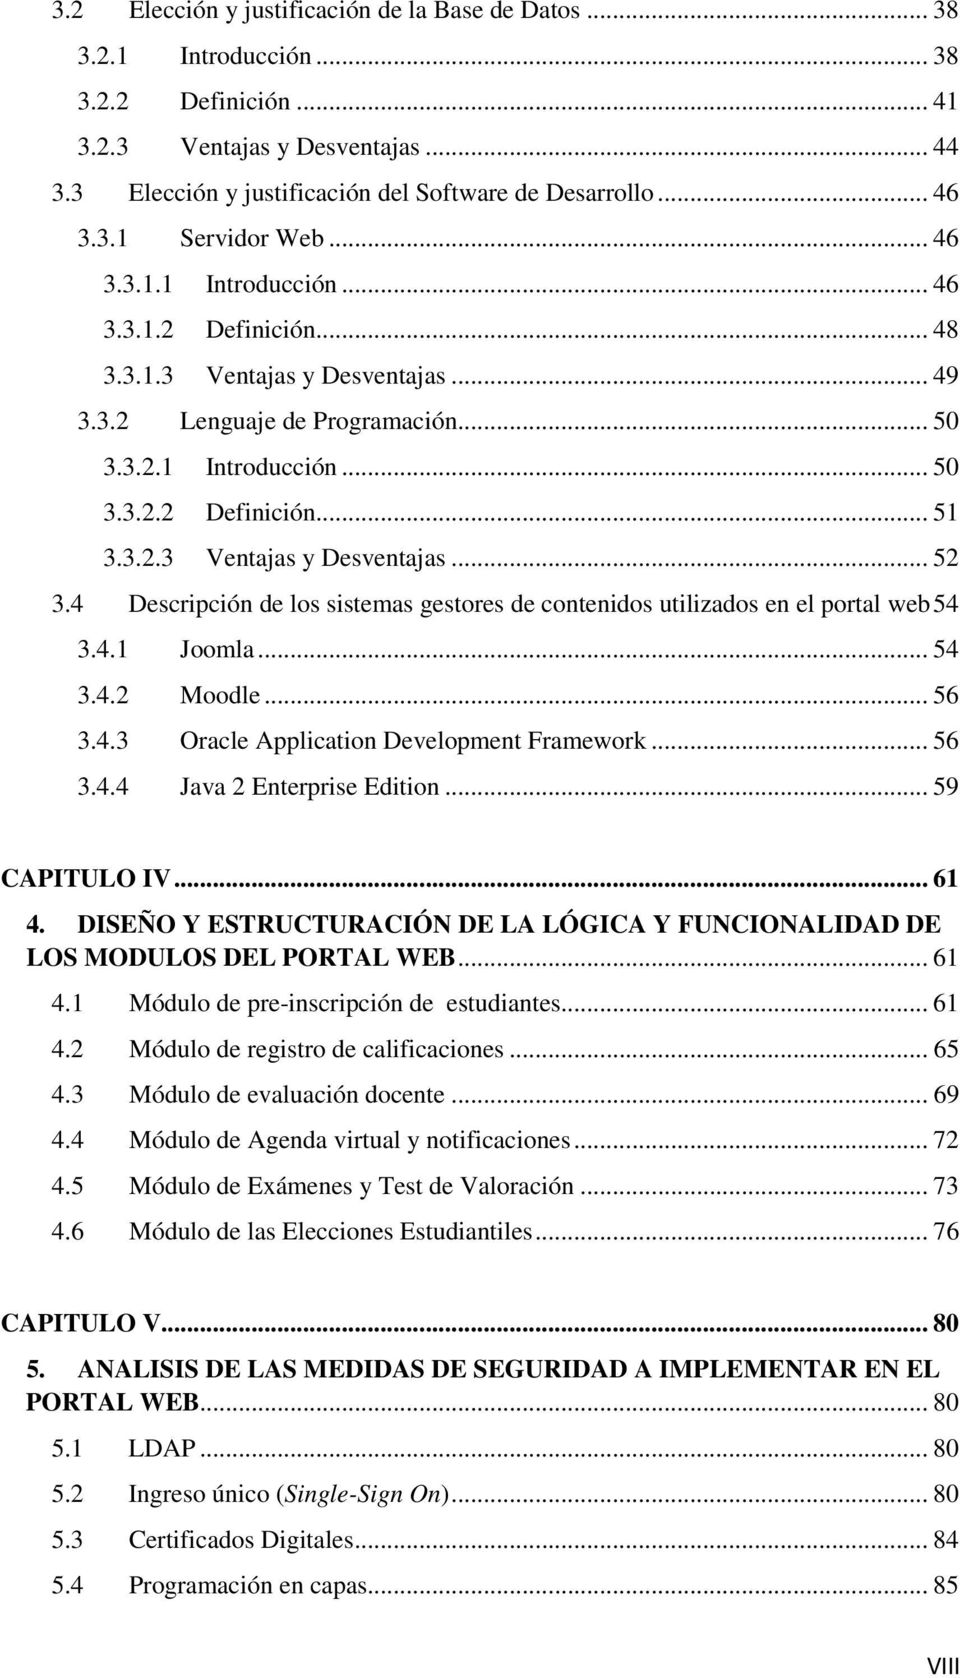 3.2.3 Ventajas y Desventajas... 52 3.4 Descripción de los sistemas gestores de contenidos utilizados en el portal web 54 3.4.1 Joomla... 54 3.4.2 Moodle... 56 3.4.3 Oracle Application Development Framework.